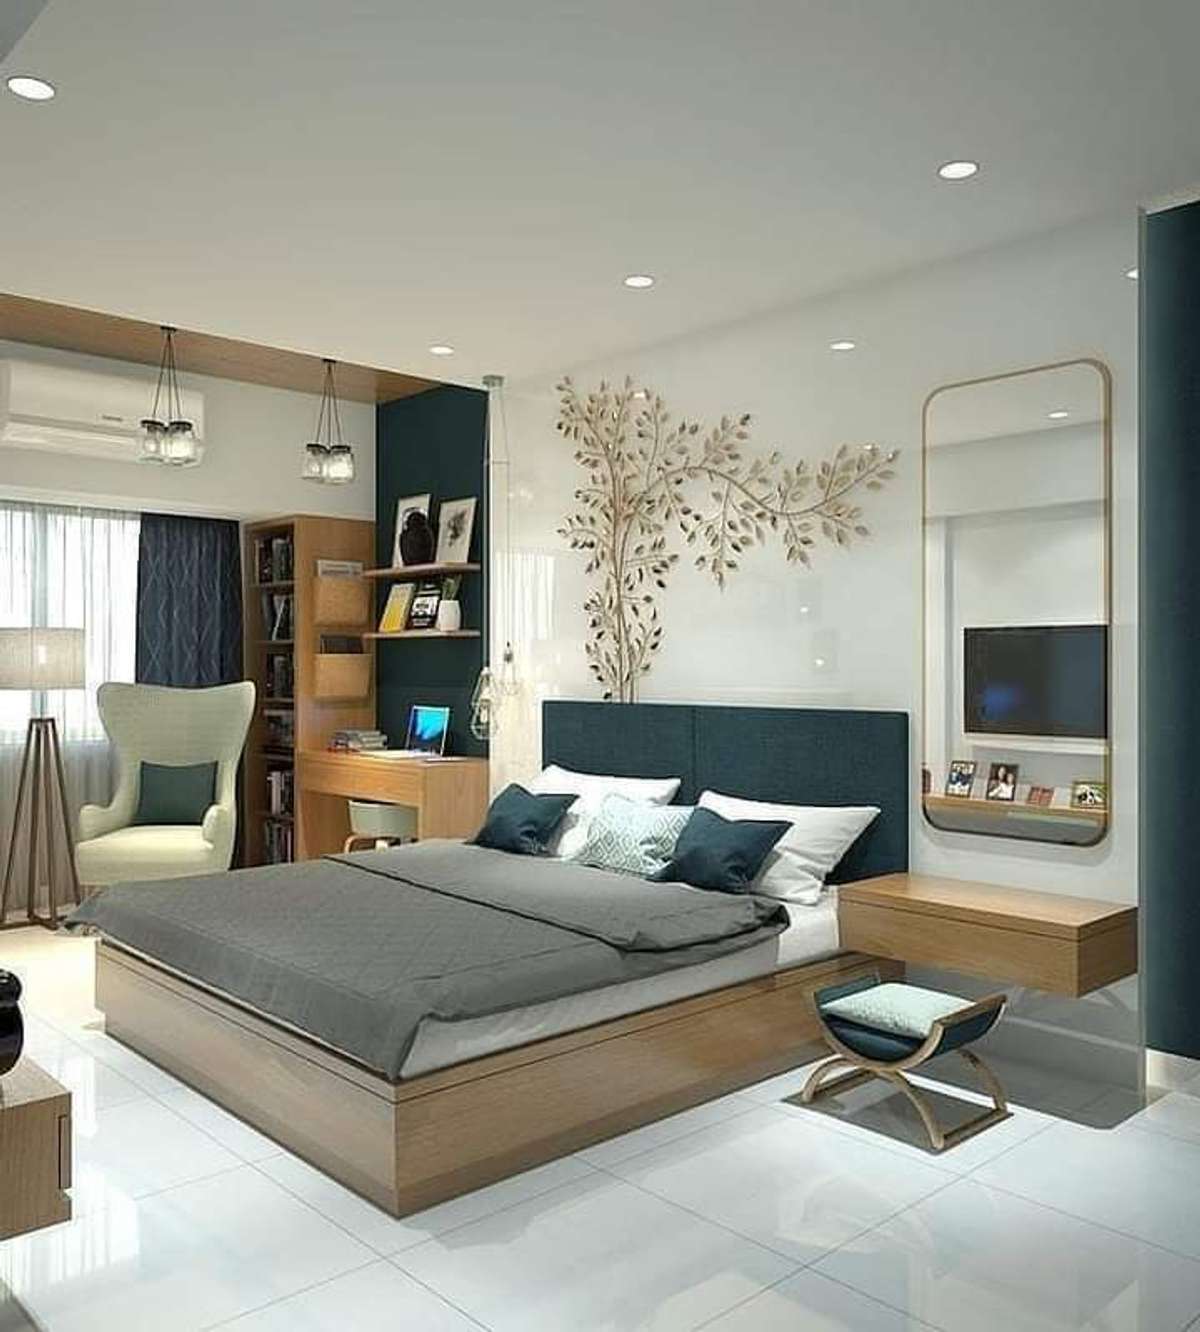 Furniture, Bedroom, Storage Designs by Carpenter Kerala Carpenters, Ernakulam | Kolo